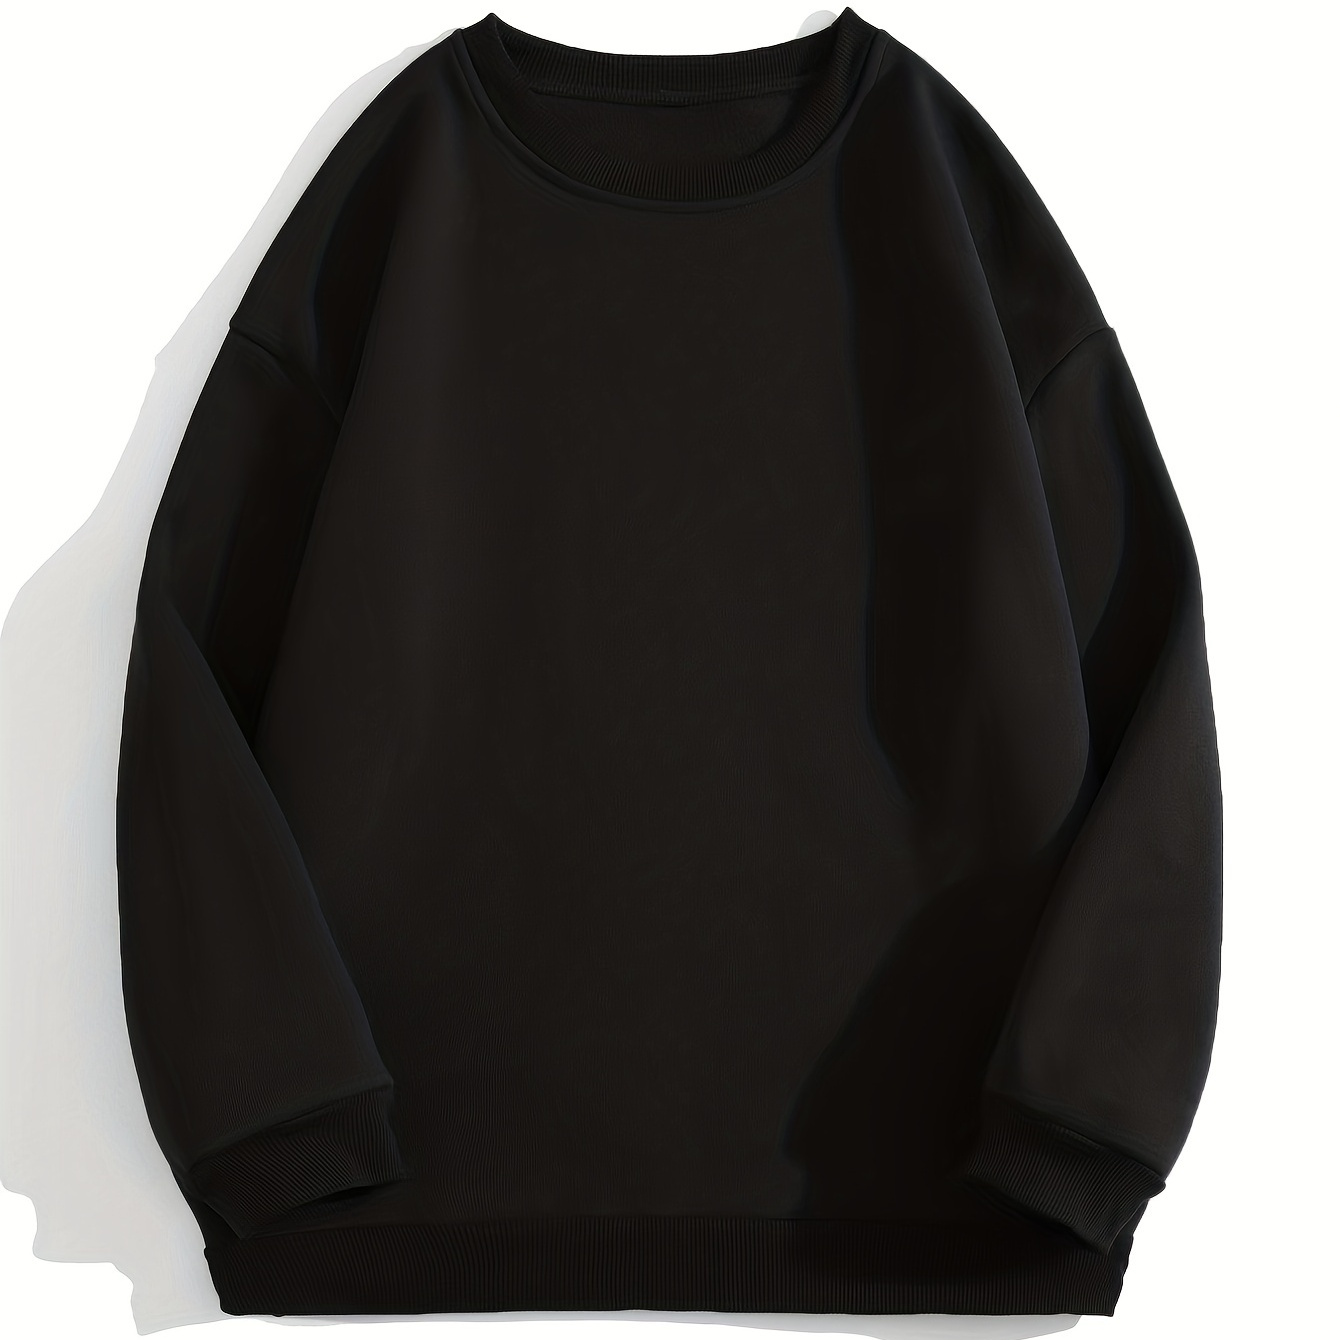 Solid Trendy Sweatshirt, Men's Casual Basic Crew Neck Pullover Sweatshirt For Men Fall Winter